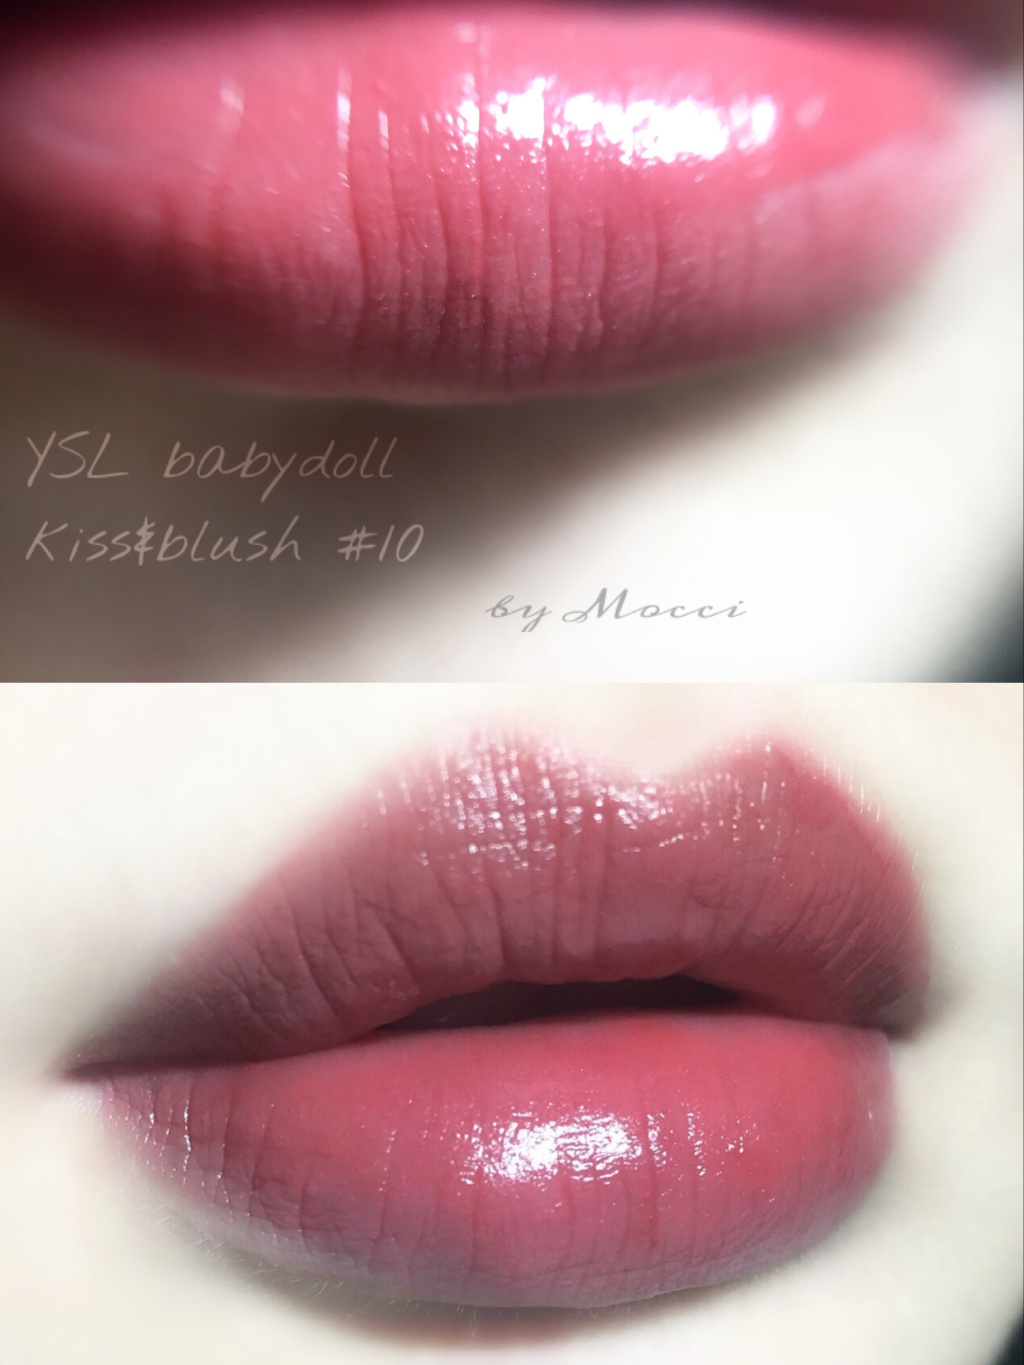 纪梵希小羊皮粗管105 | Armani 红管唇釉501 | YSL kiss&blush 唇颊两用10 试色对比